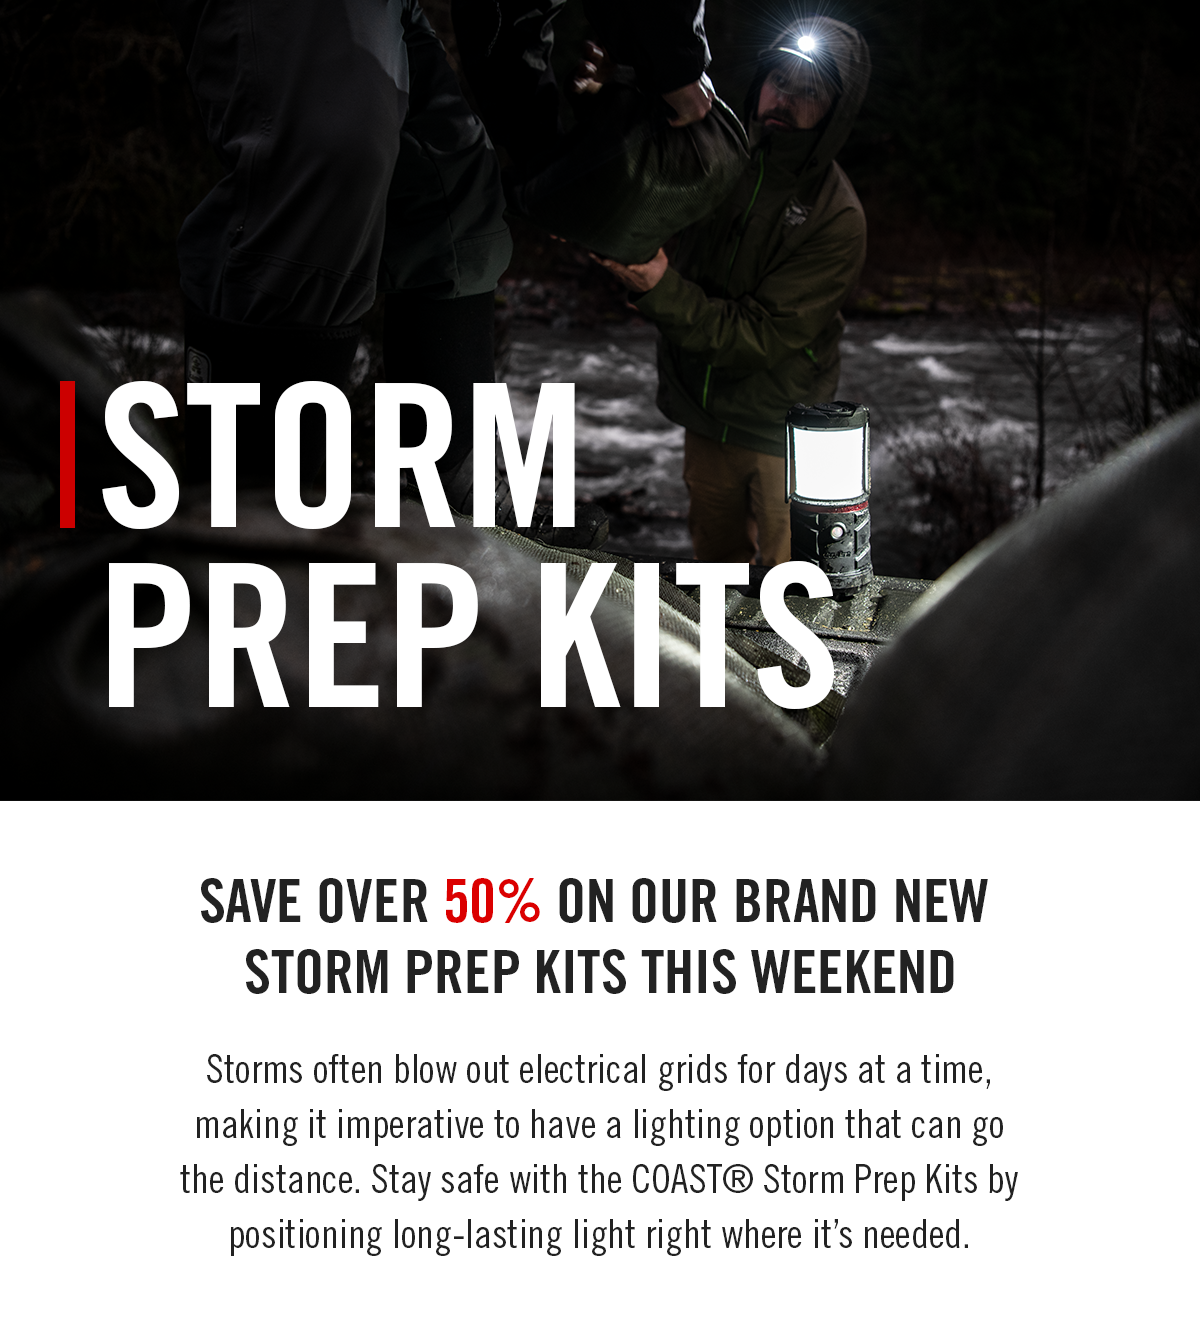 Save over 50% on storm prep kits.